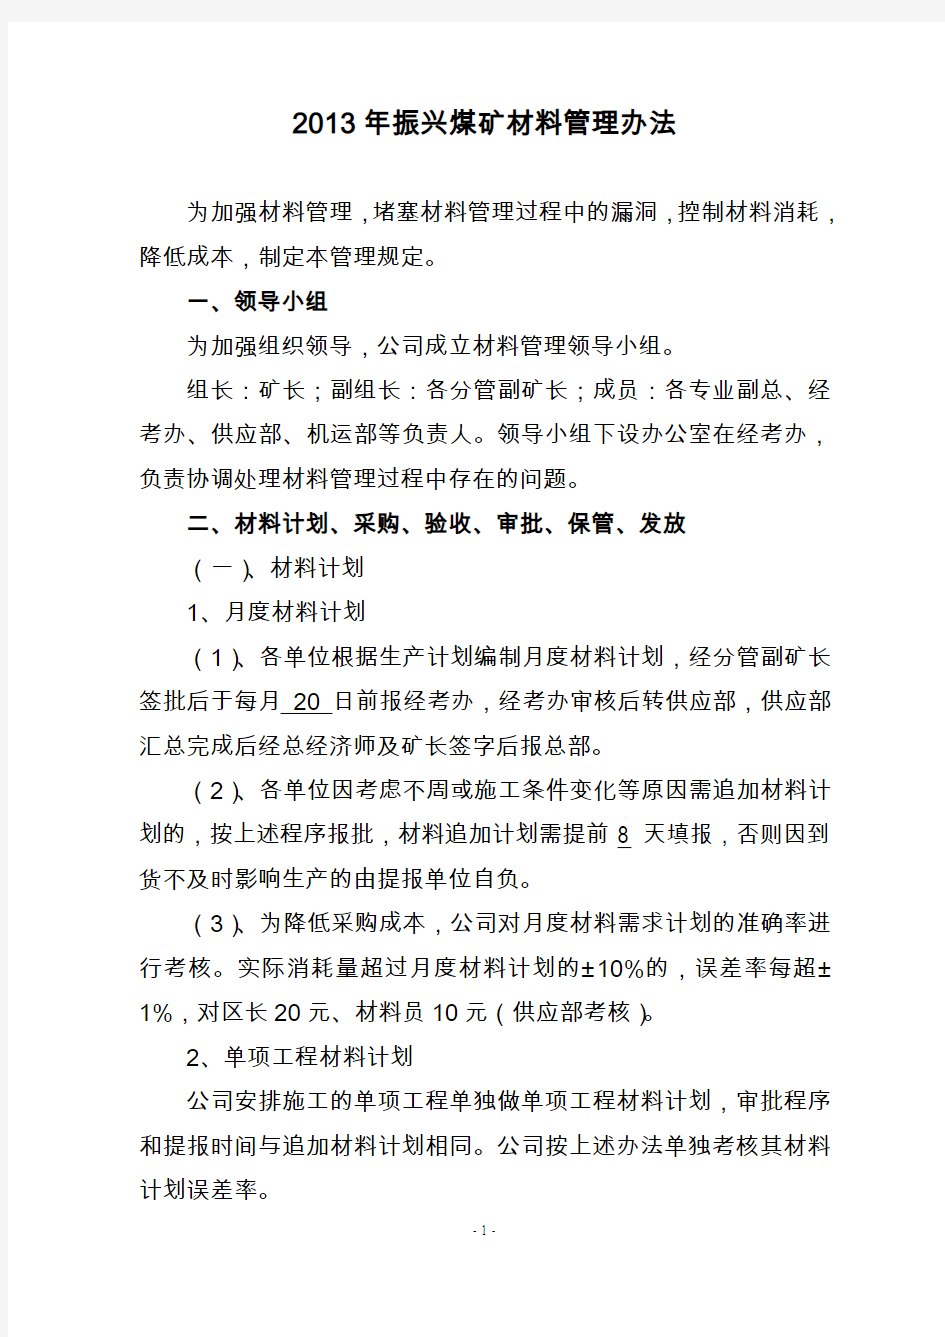 2013年振兴煤矿材料管理规定(定稿)